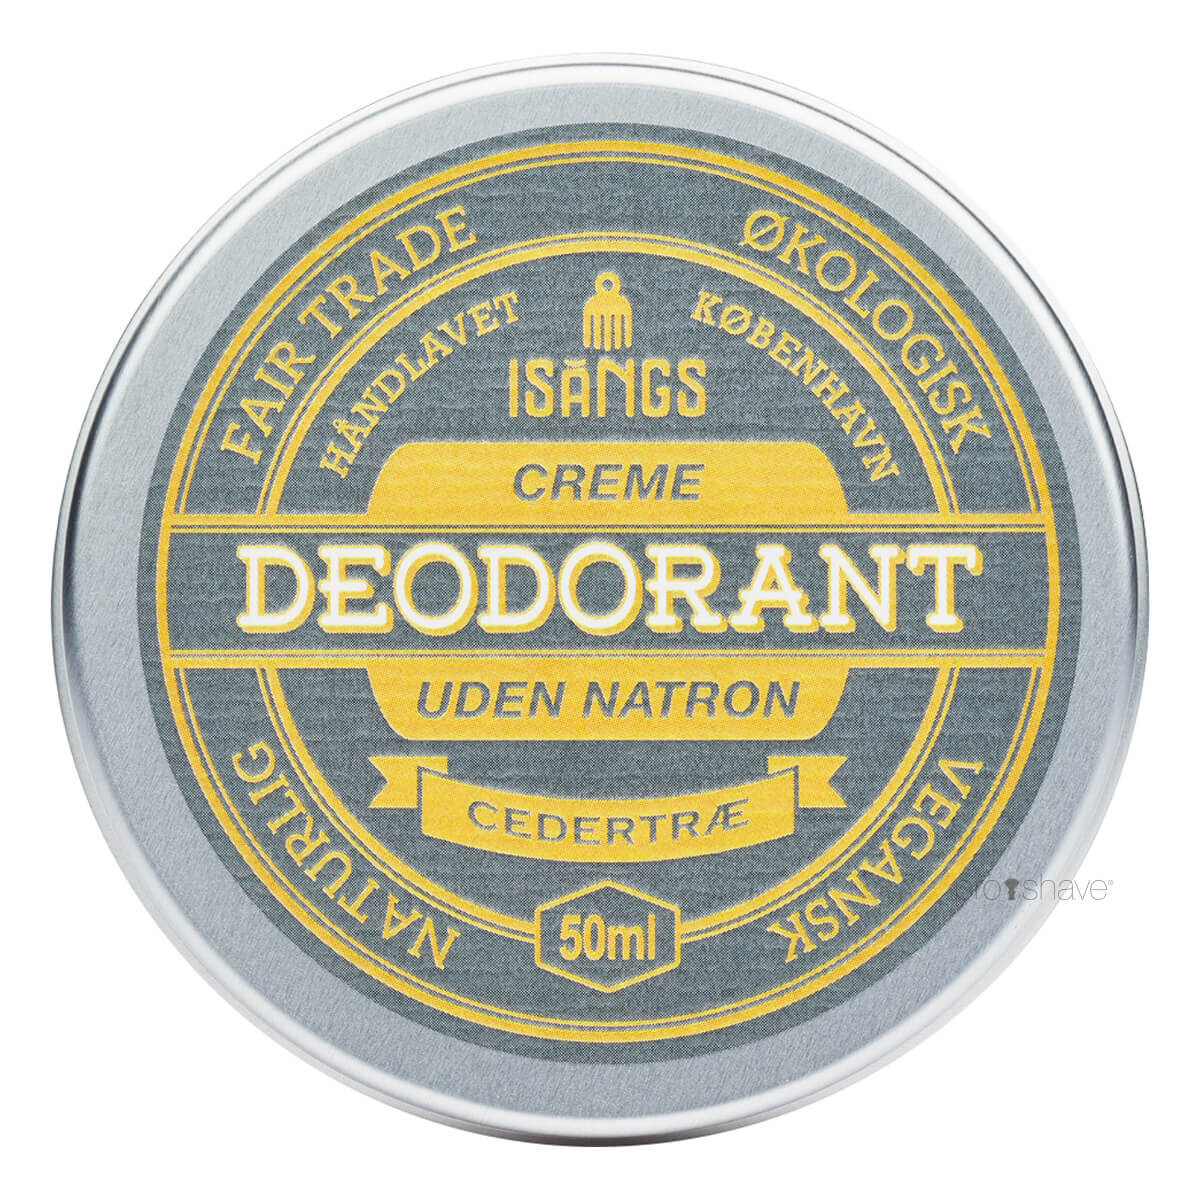 Se Isangs Creme Deodorant uden Natron, Cedertræ, 50 ml. hos Proshave